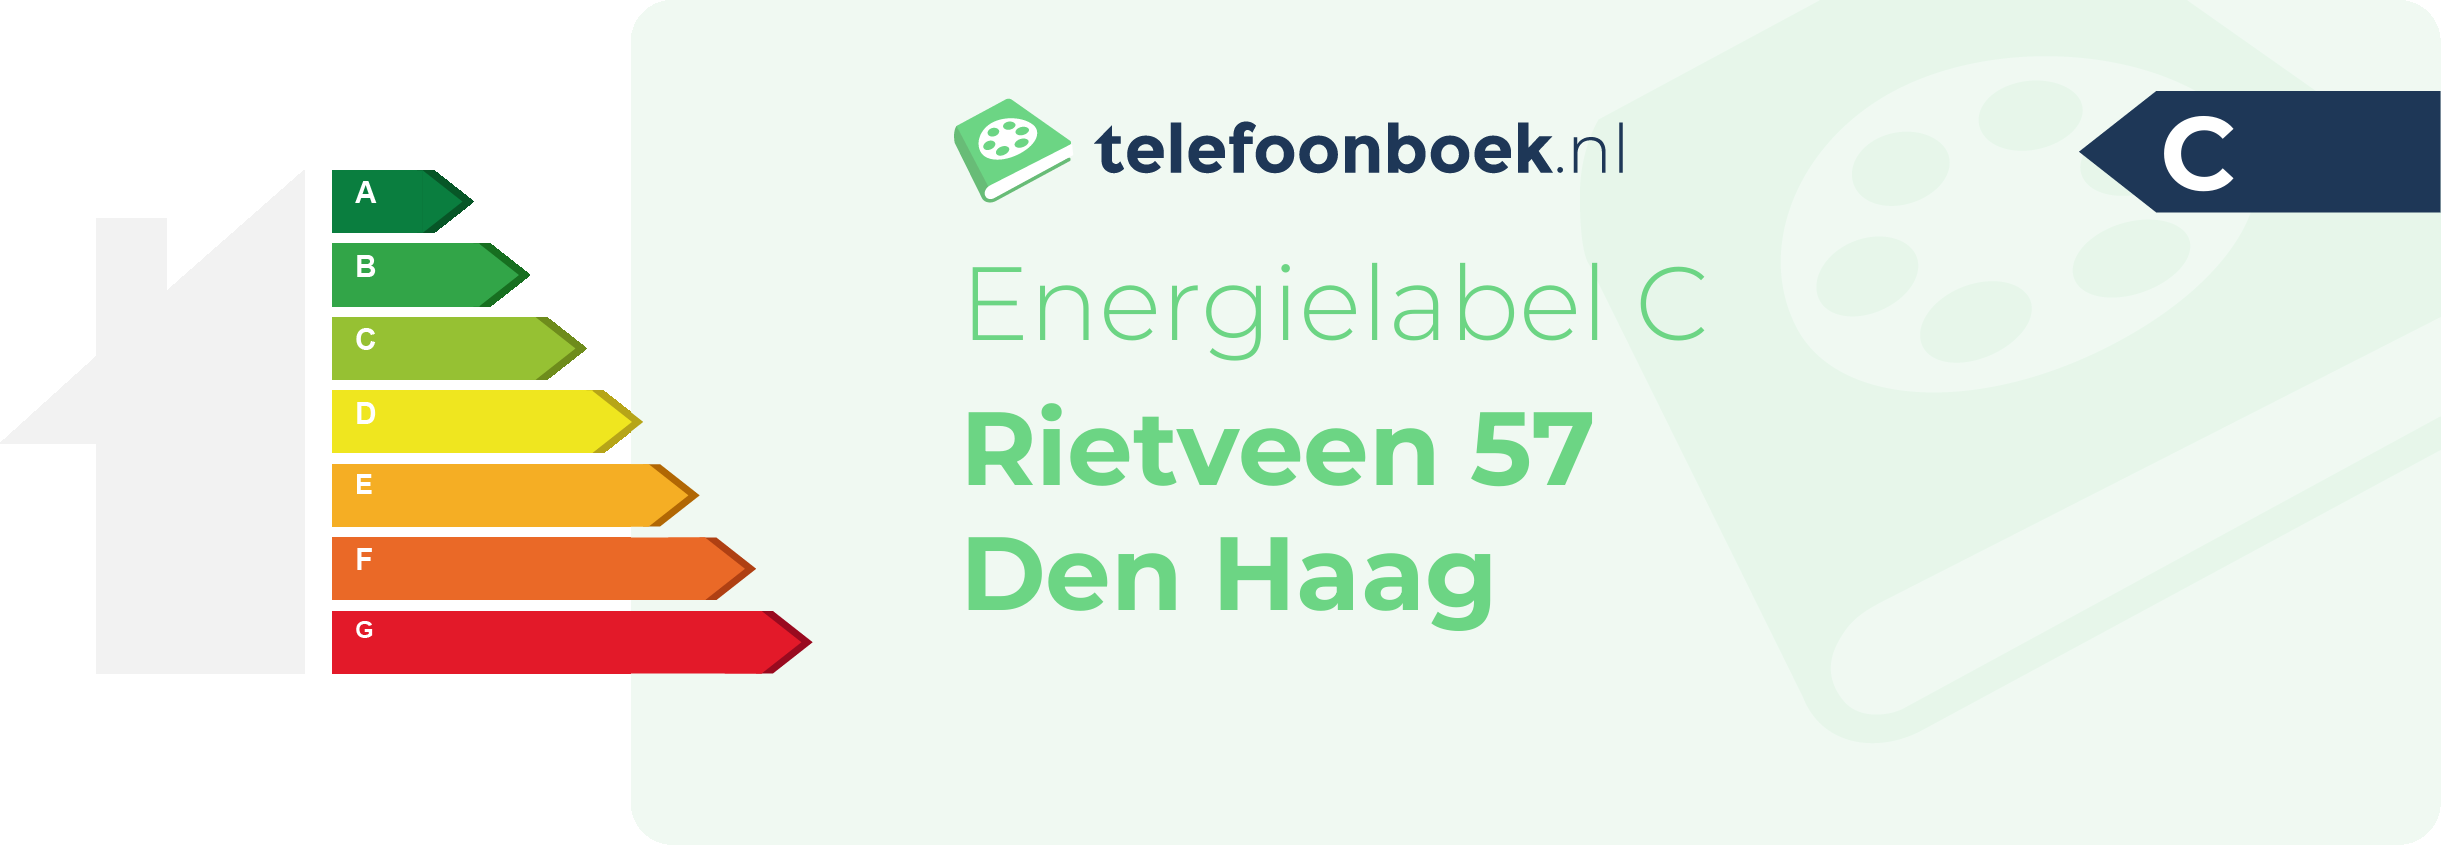 Energielabel Rietveen 57 Den Haag